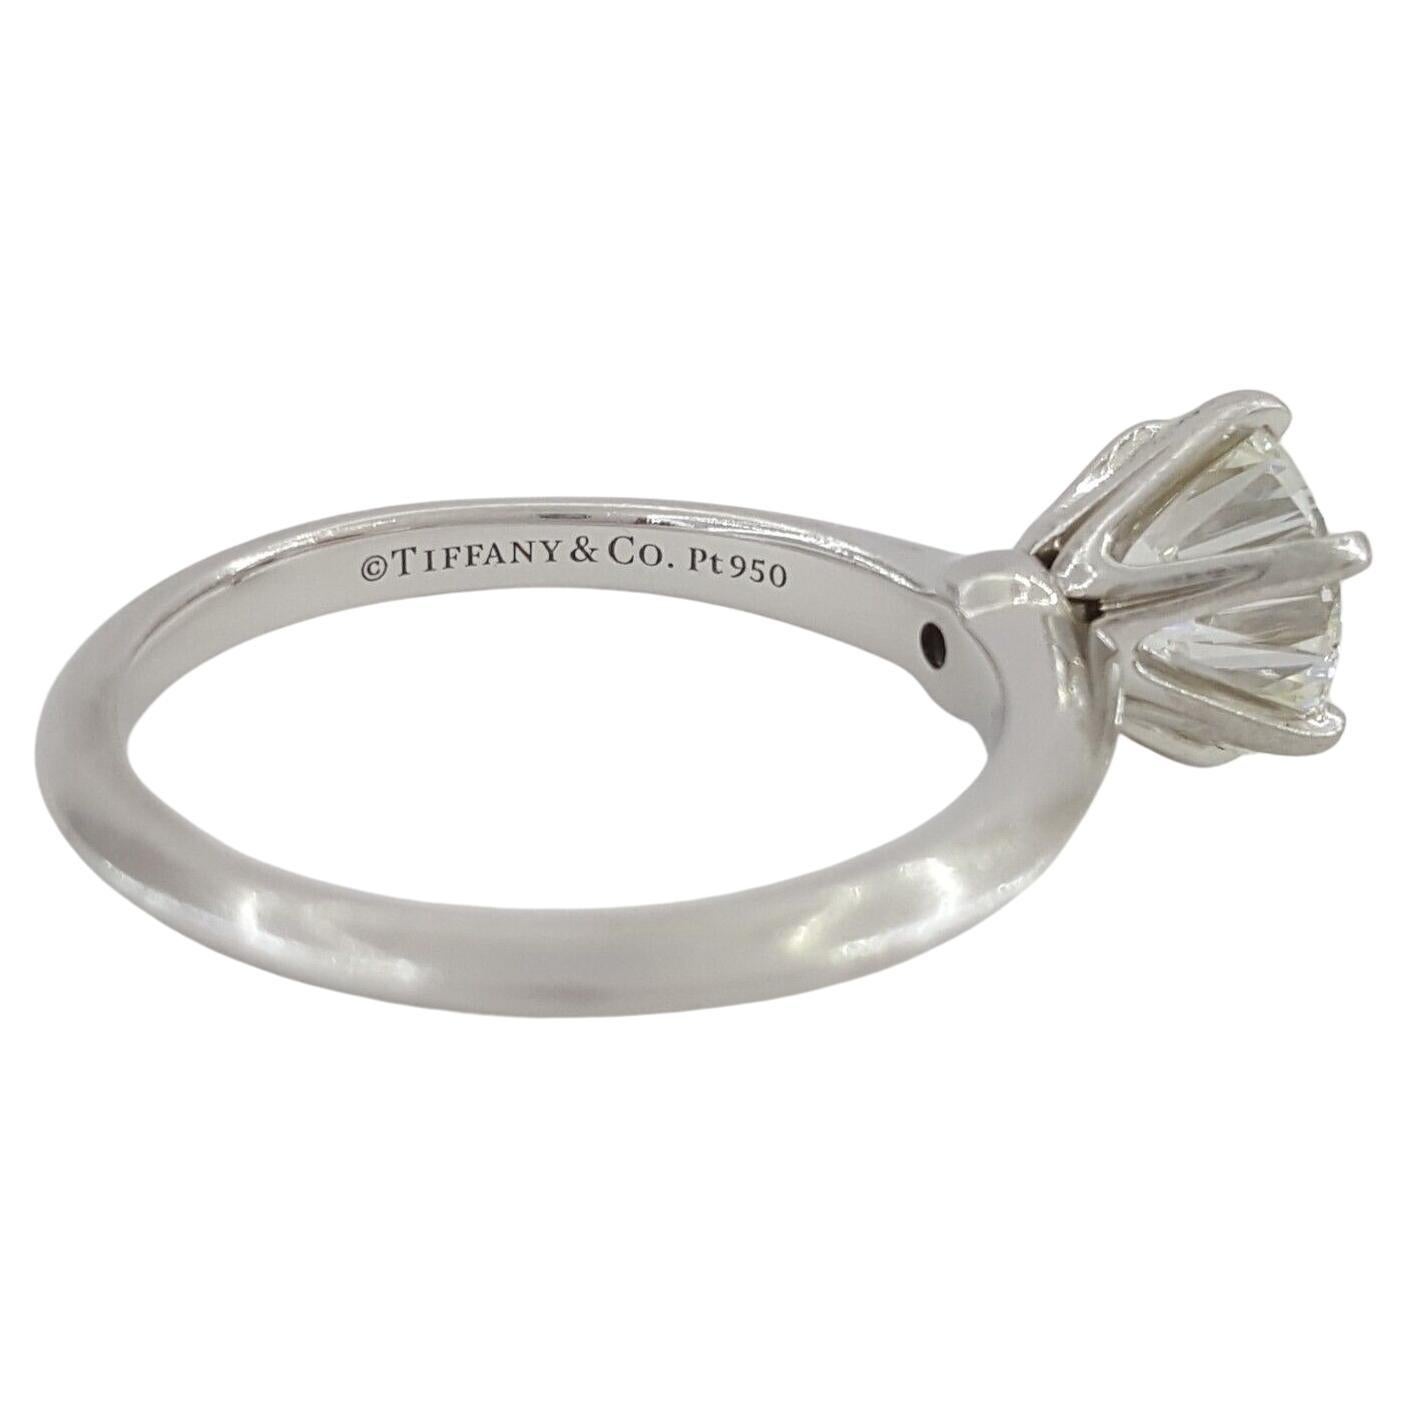 Tiffany & Co. 1.59 ct poids total Platinum Round Brilliant Cut Diamond Solitaire Engagement Ring-un symbole intemporel d'amour et d'élégance durables.

Fabriquée à la perfection, cette magnifique bague pèse 5,2 grammes et est de taille 6,5, avec la